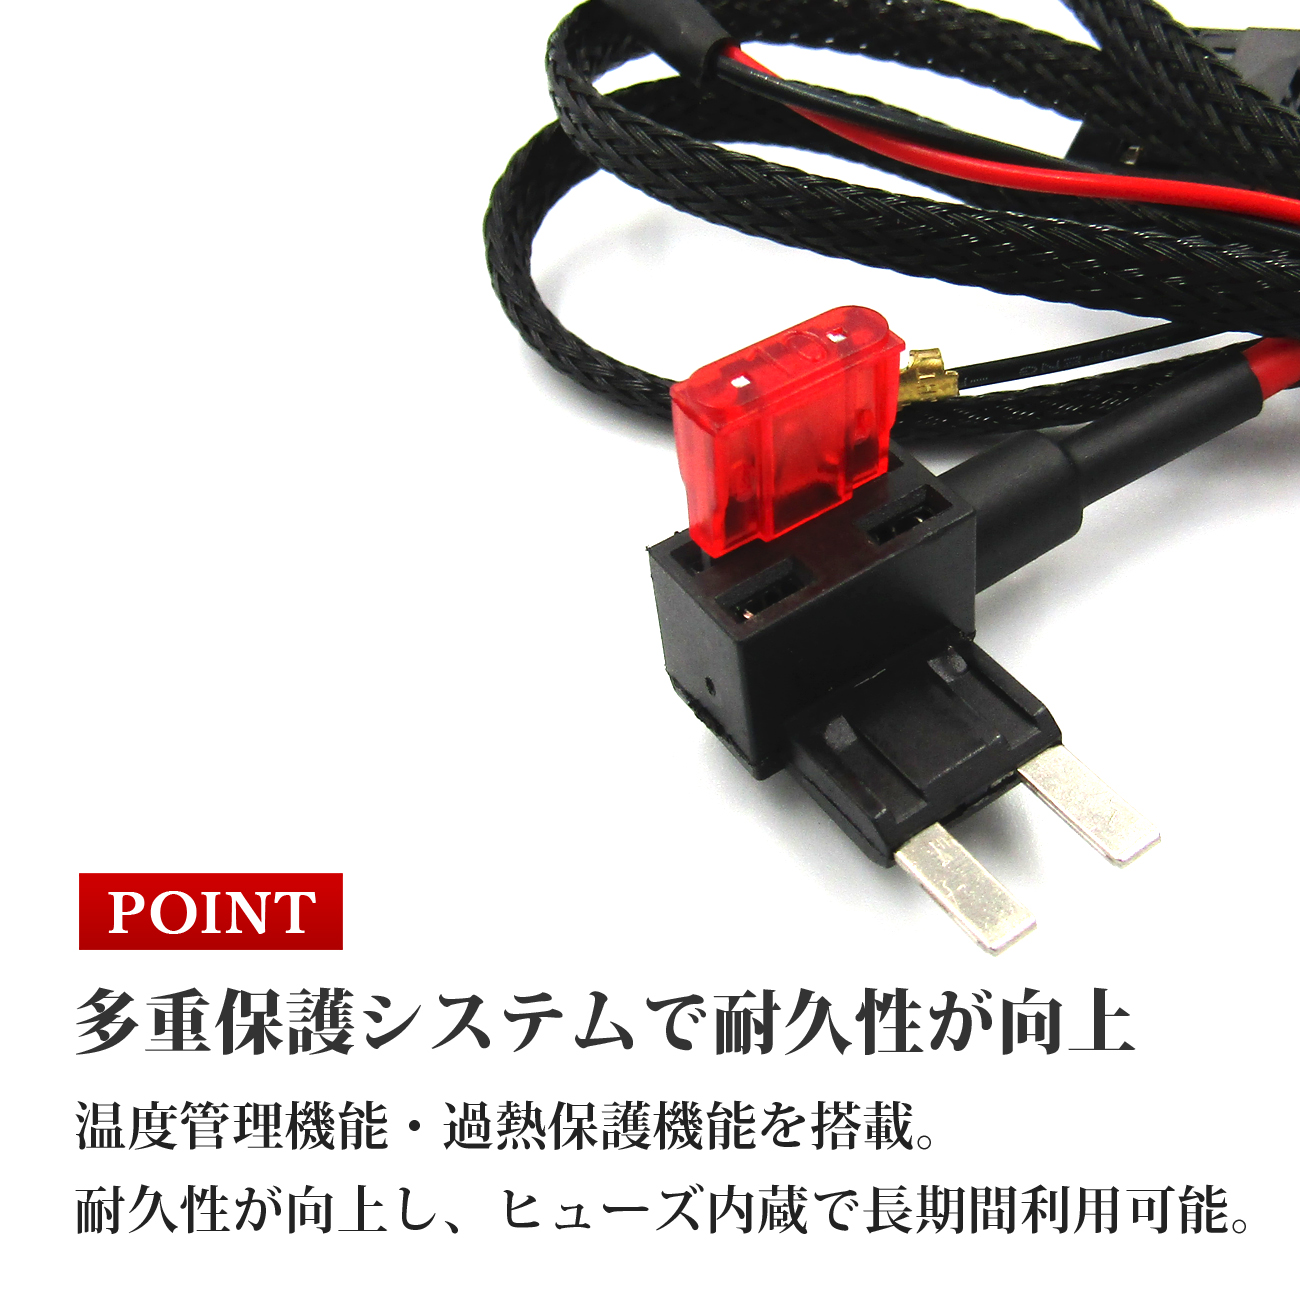 ゼストスパーク JE1 JE2 USBポート ホンダ 増設 Aタイプ 充電USBポート スマホ充電 急速充電 QC3.0 2ポート